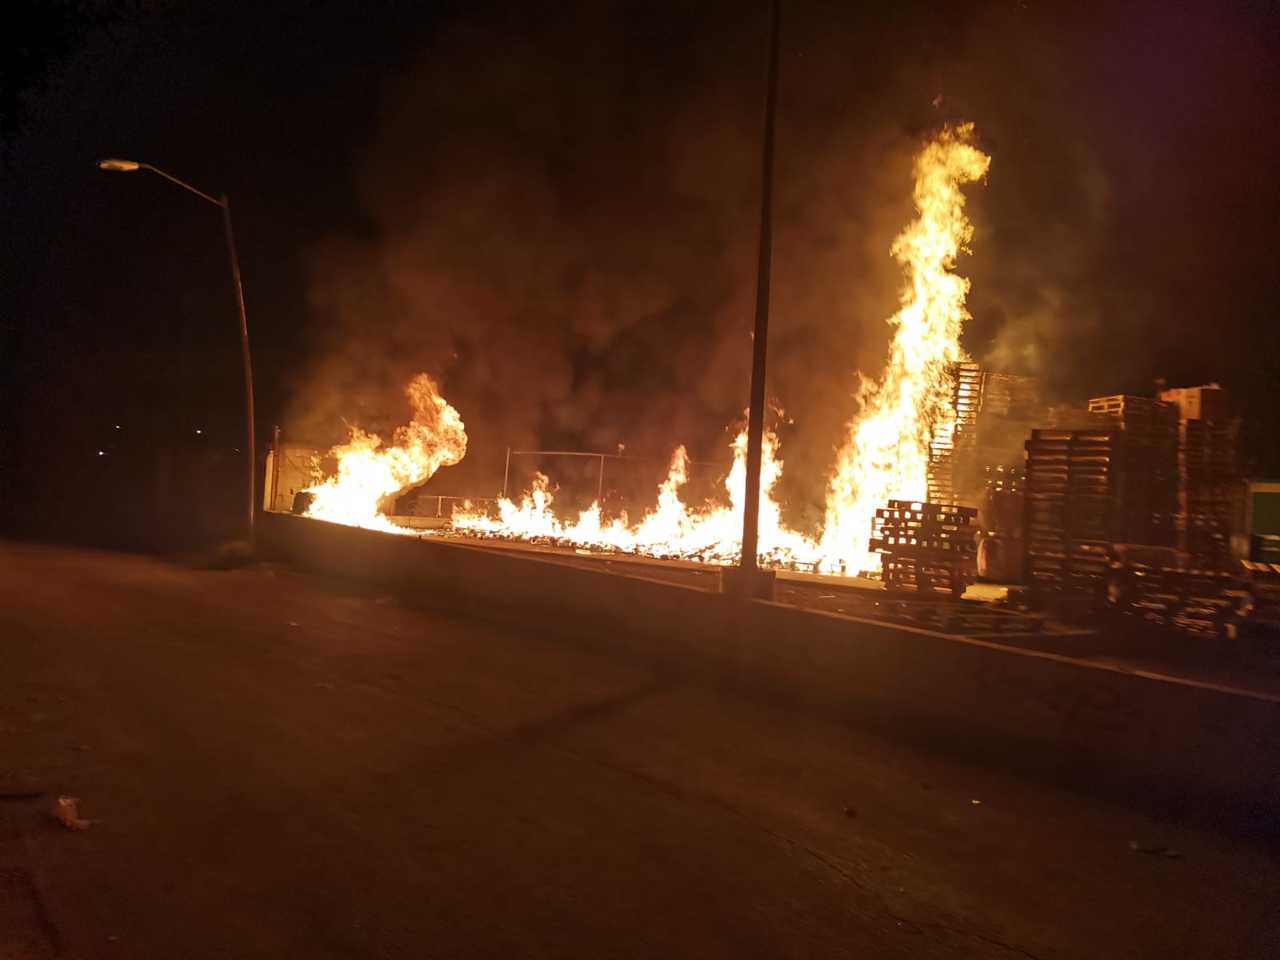 Tarimas y pacas de cartón se incendiaron en los patios de un centro comercial ubicado en el sector oriente de Torreón.